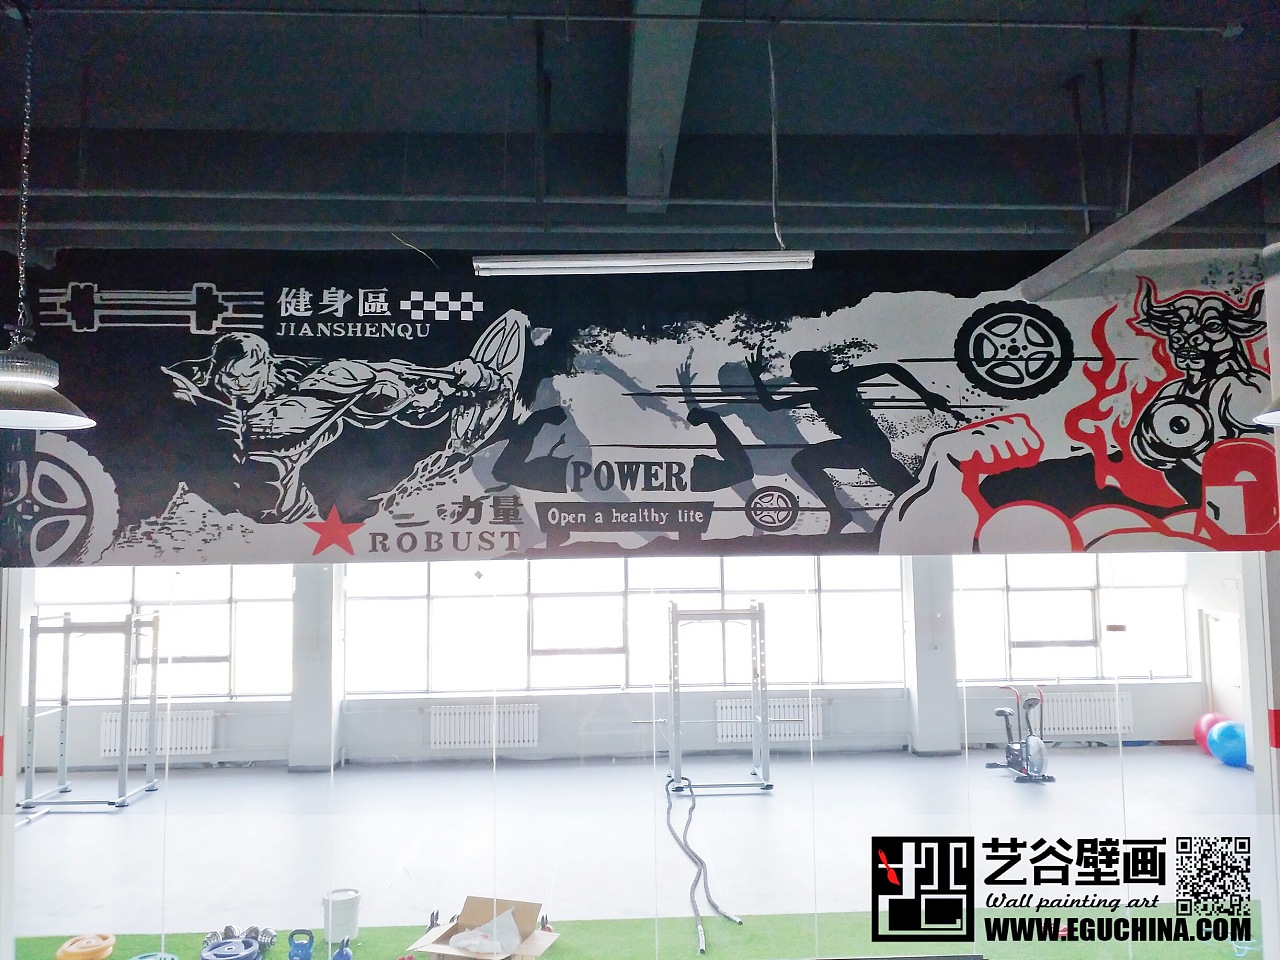 哈尔滨国际汽车城方程式卡丁车俱乐部墙绘彩绘